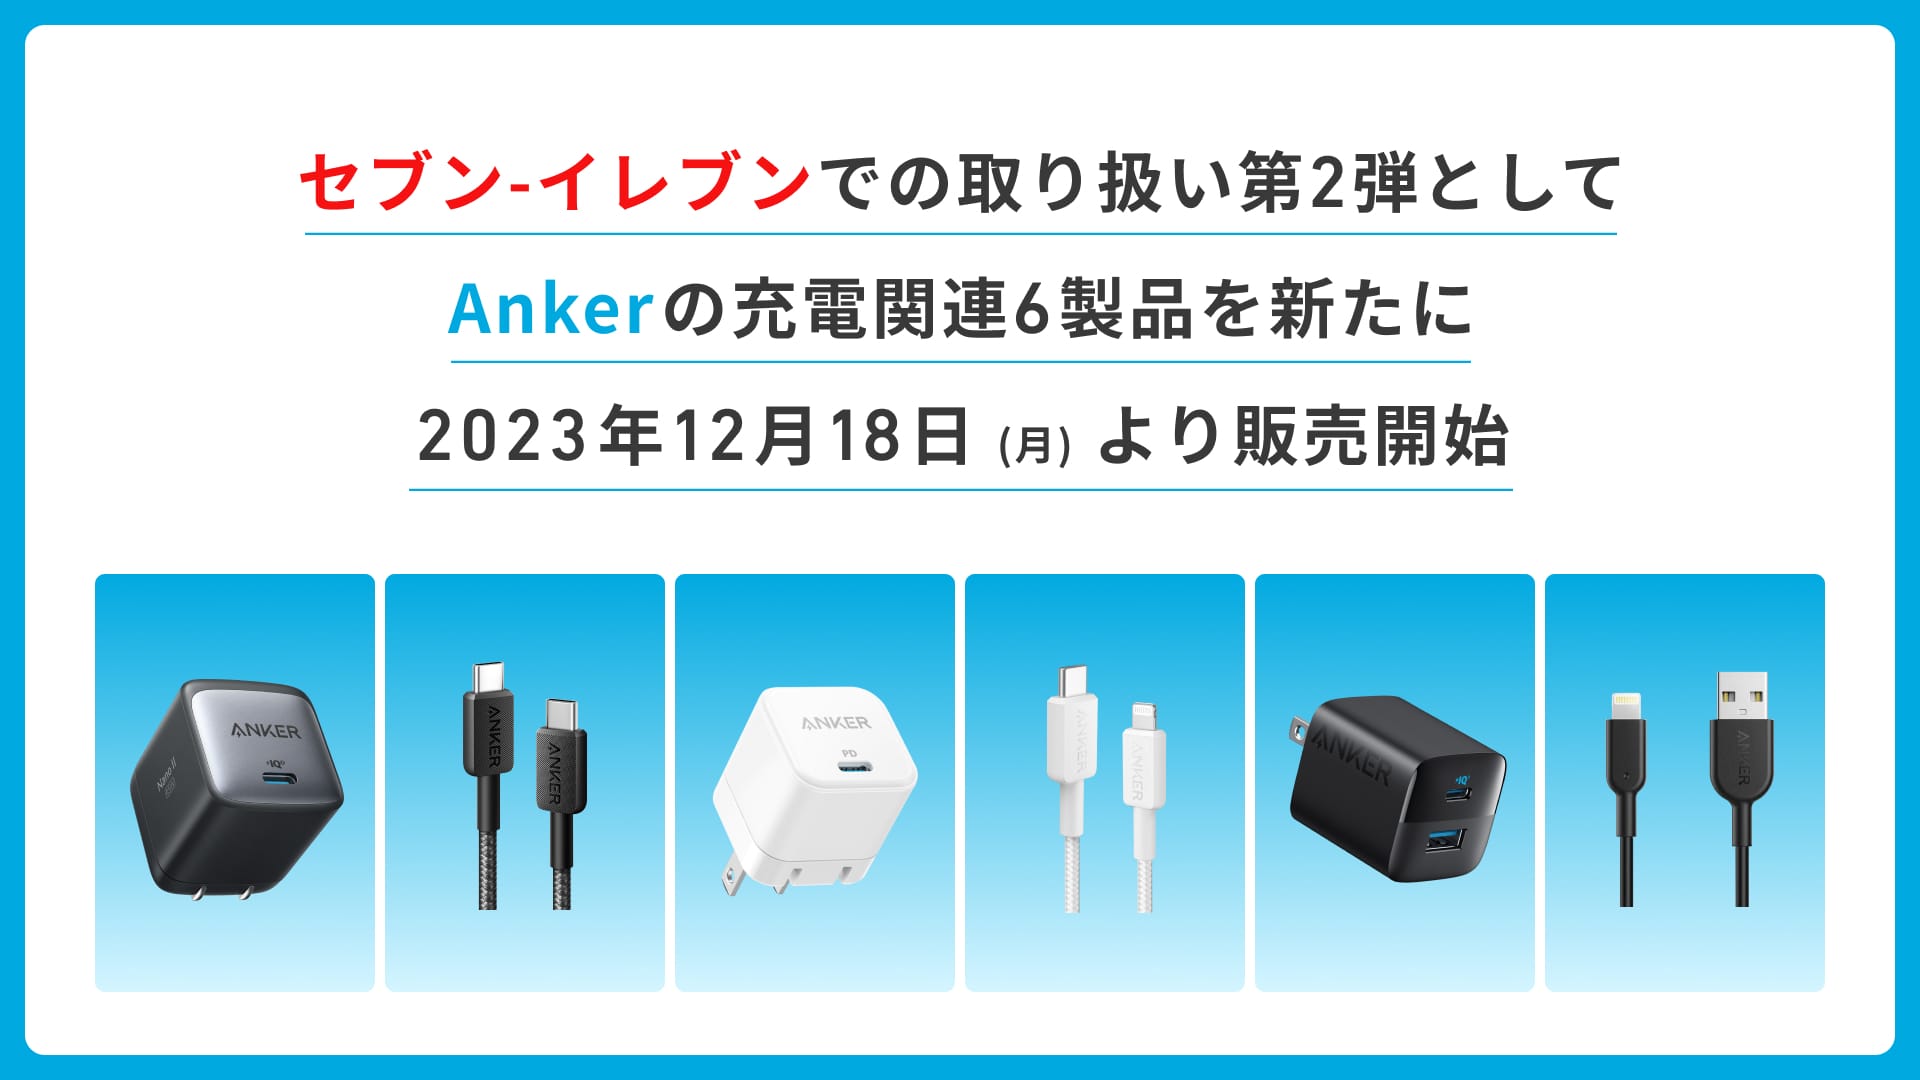 Anker、セブン-イレブンでUSB急速充電器とUSBケーブル6製品を販売開始